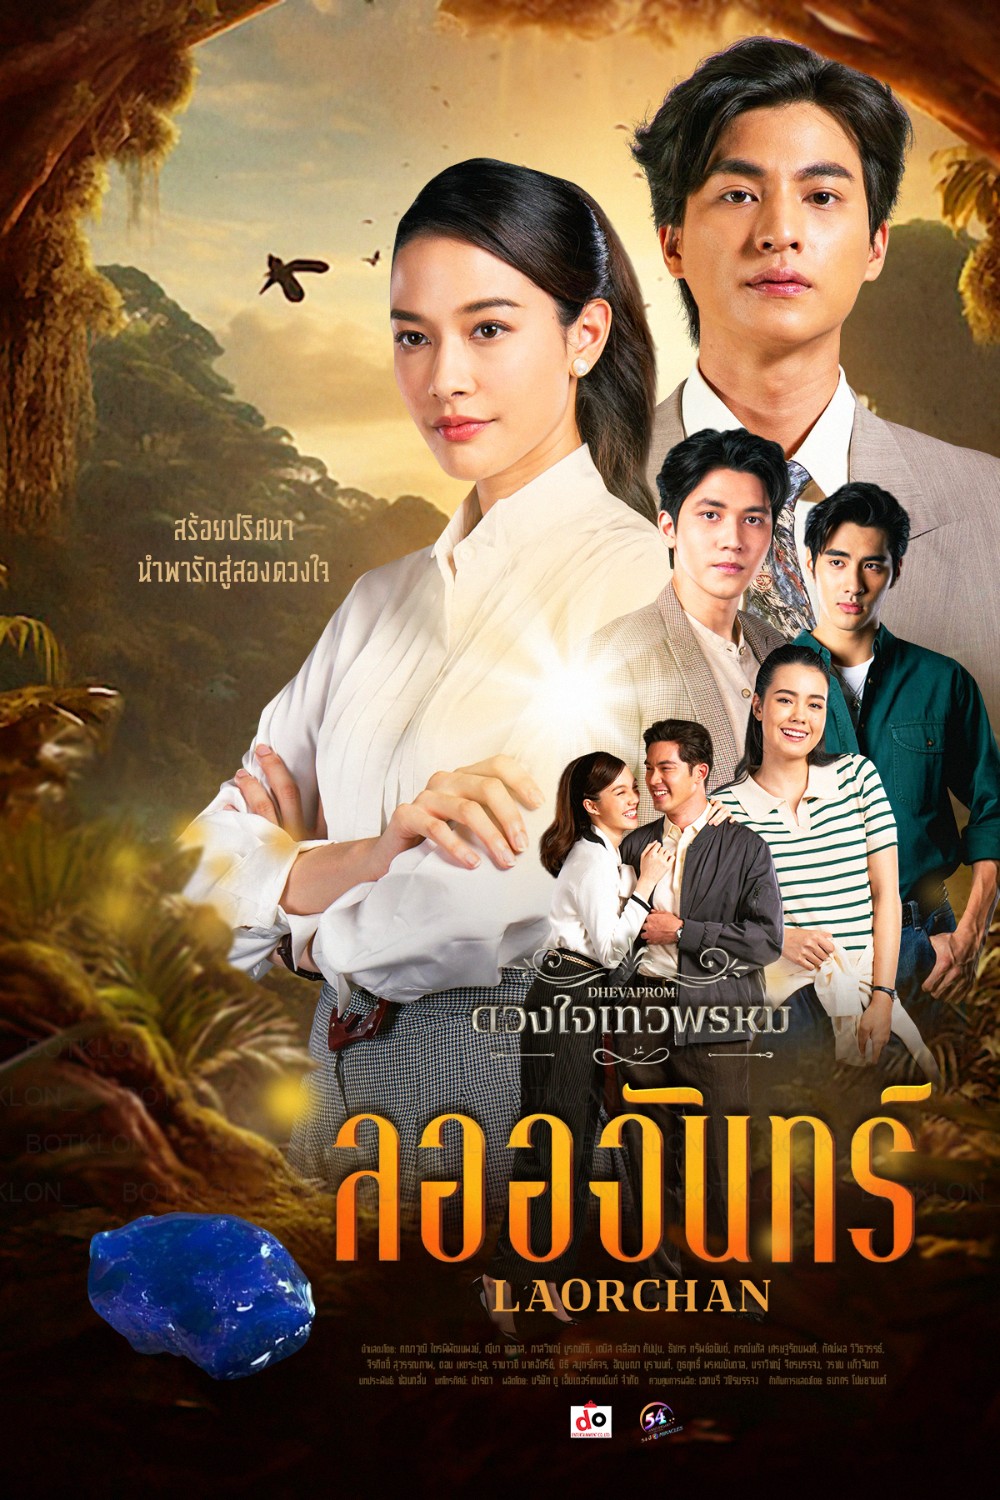 ดูหนังออนไลน์ ละครไทย Duangchai Thewa Phrom ดวงใจเทวพรหม (ตอน ลออจันทร์) พากย์ไทย